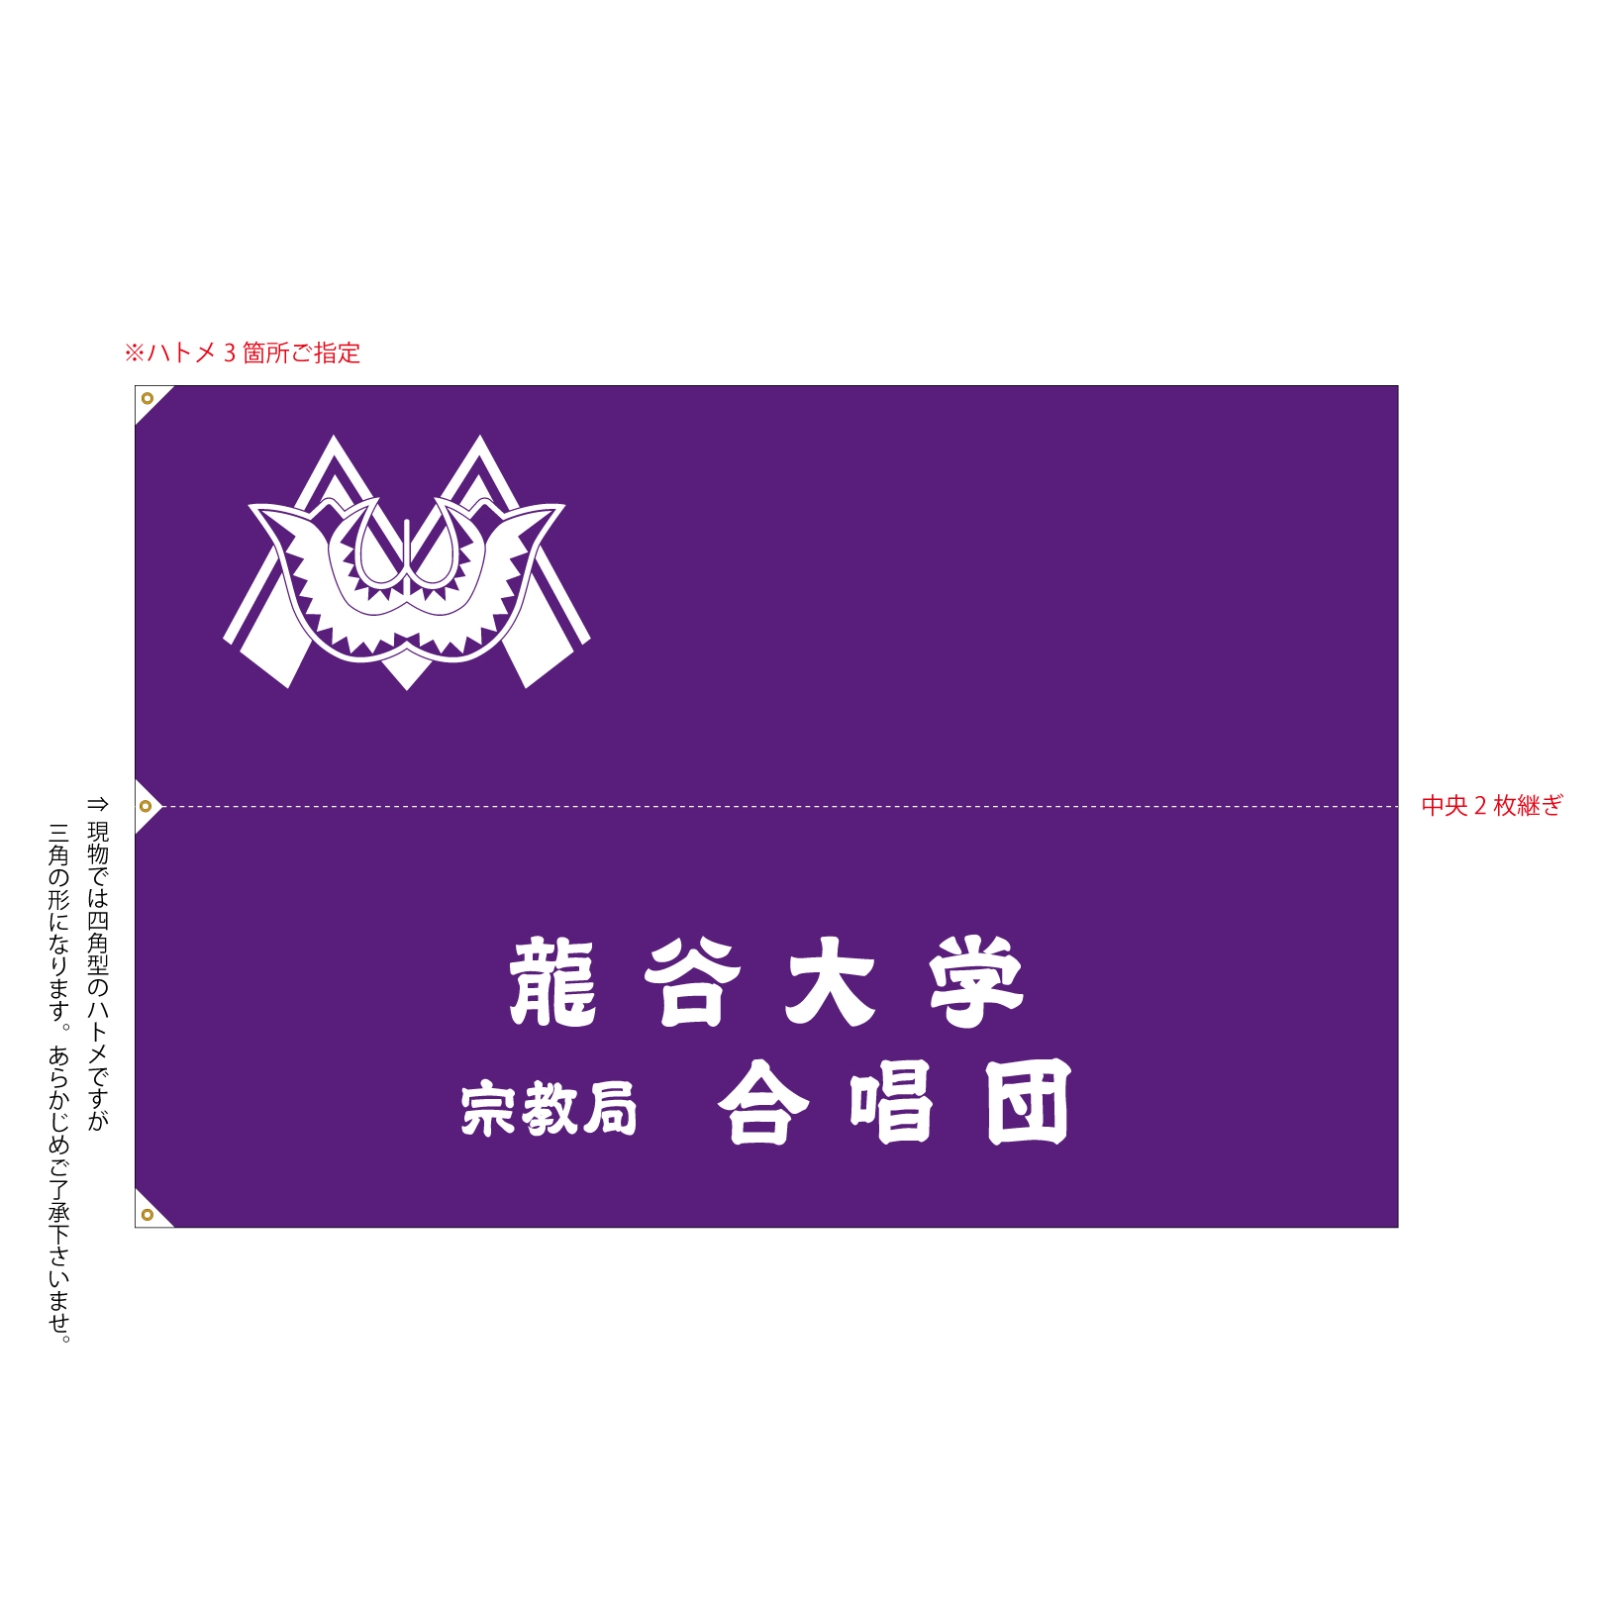 龍谷大学宗教局合唱団の旗